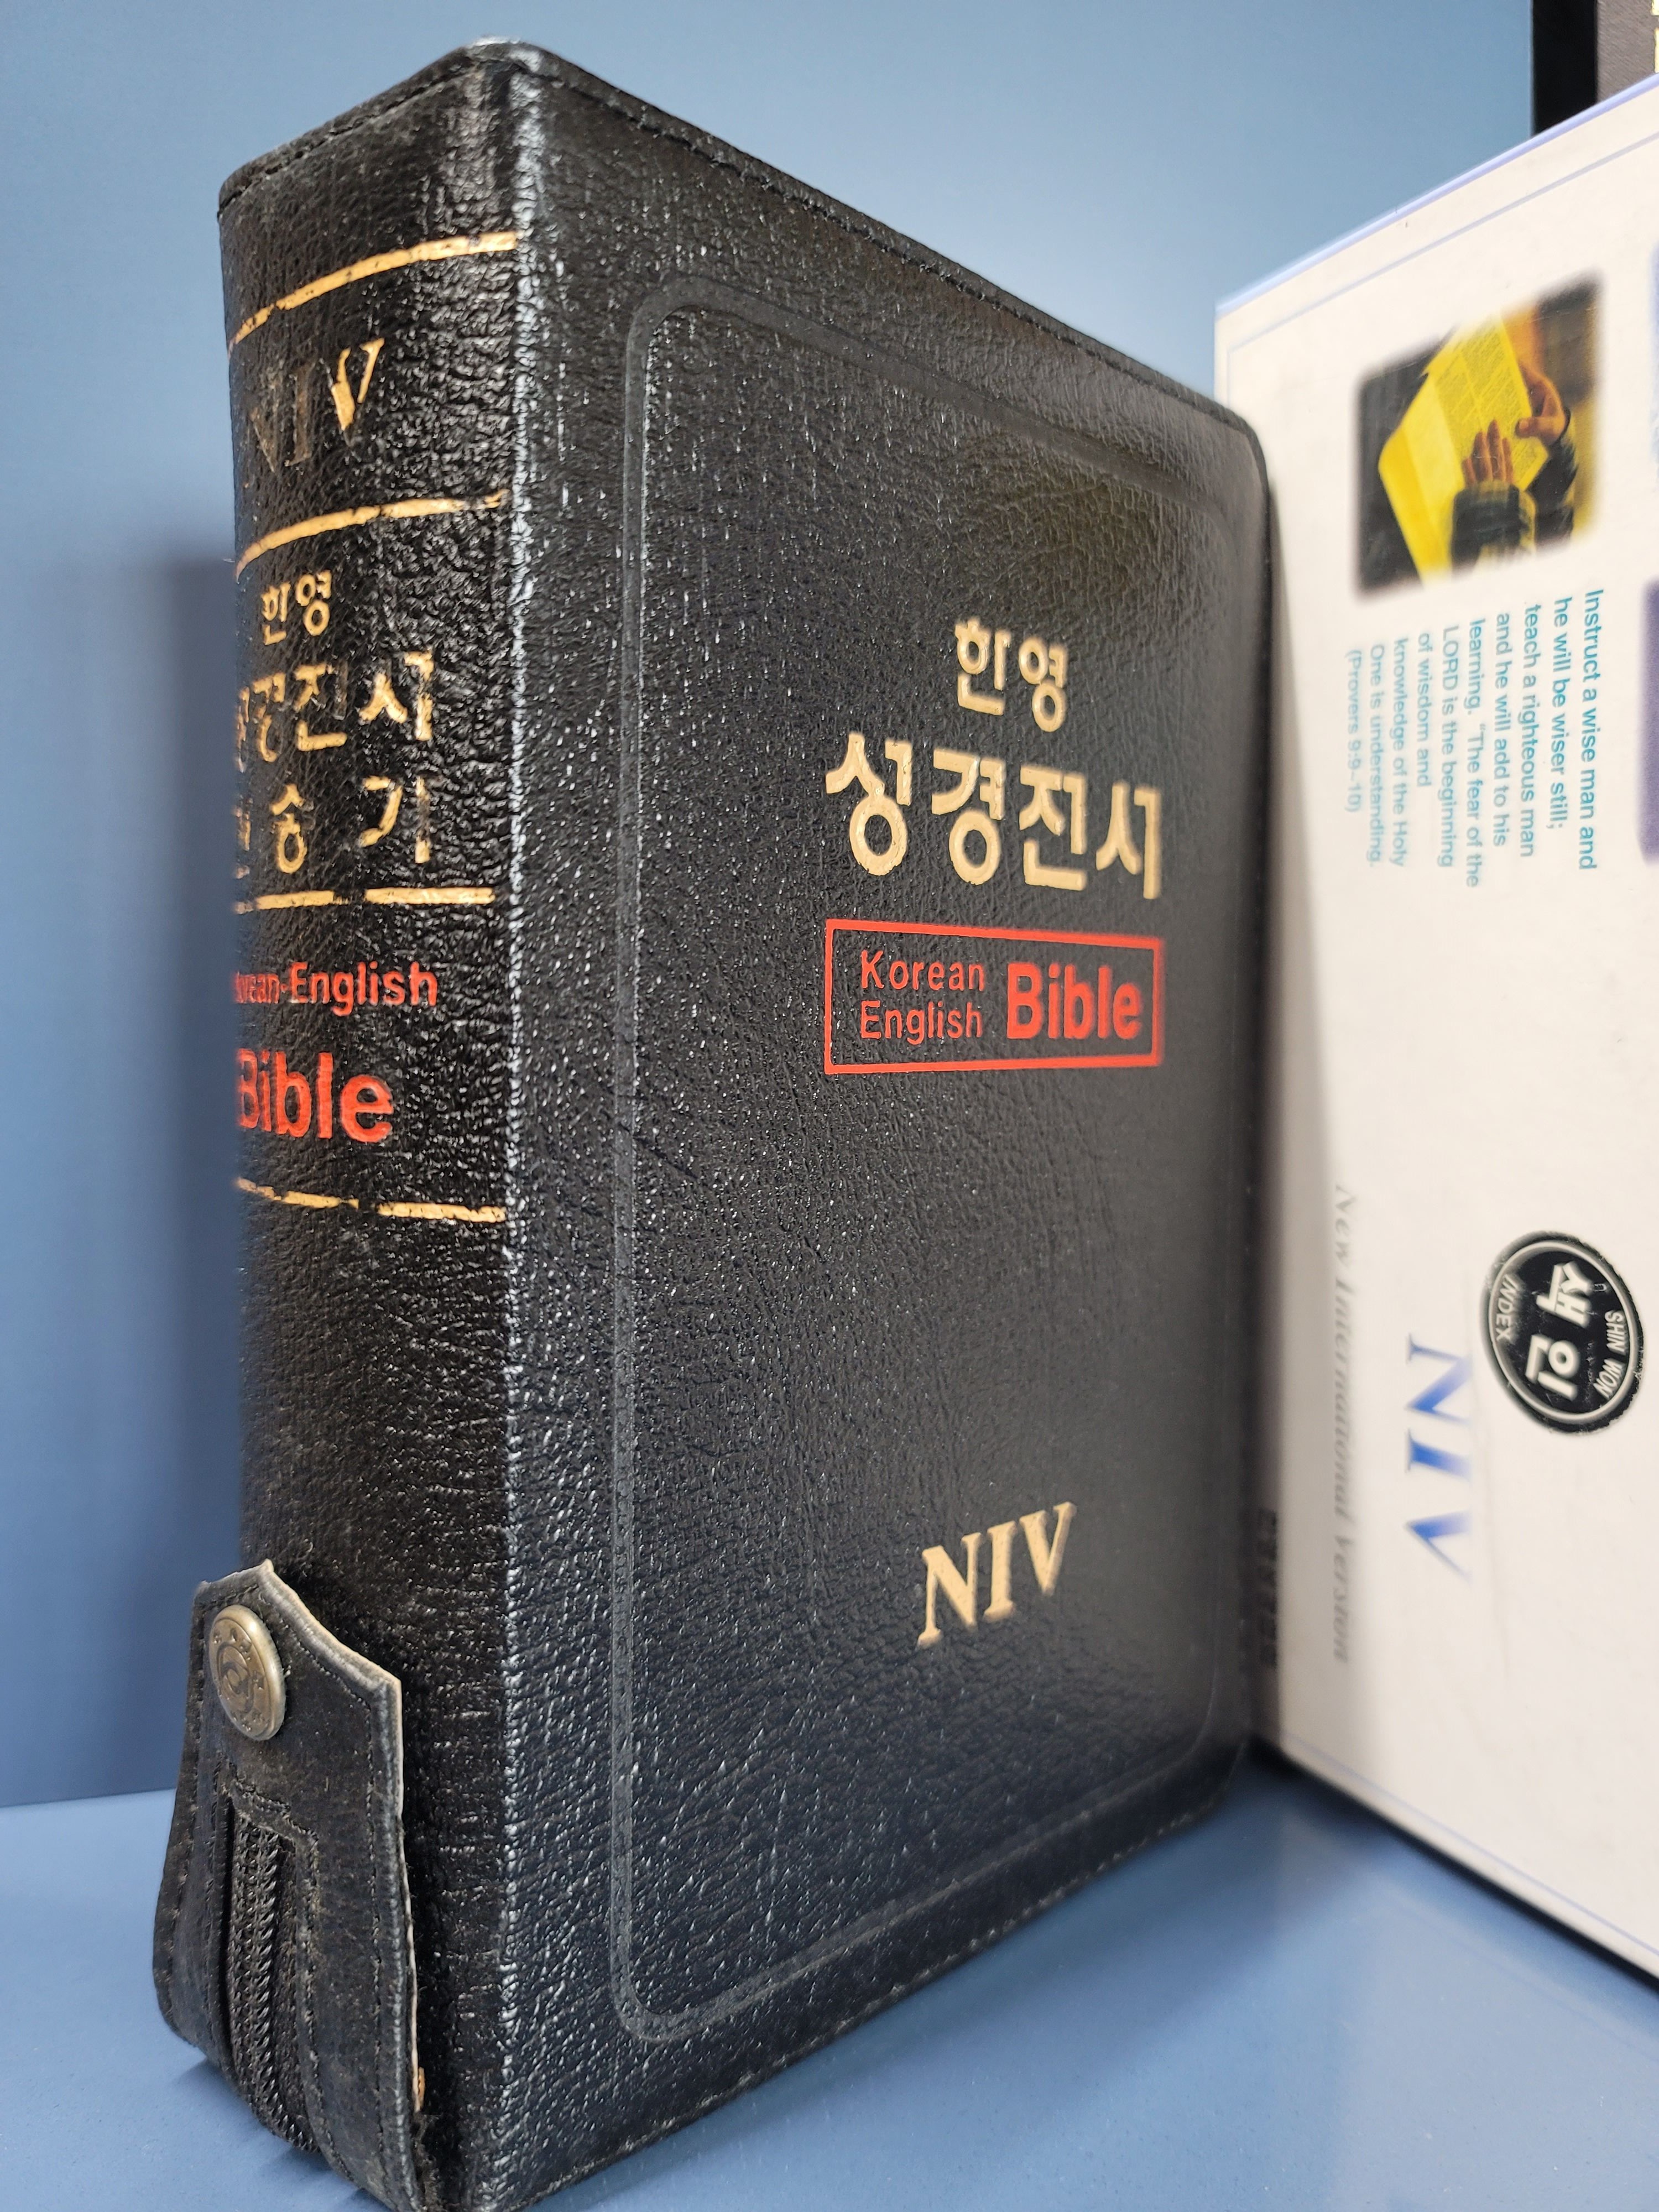 NIV 한영해설성경 <미사용 재고도서>